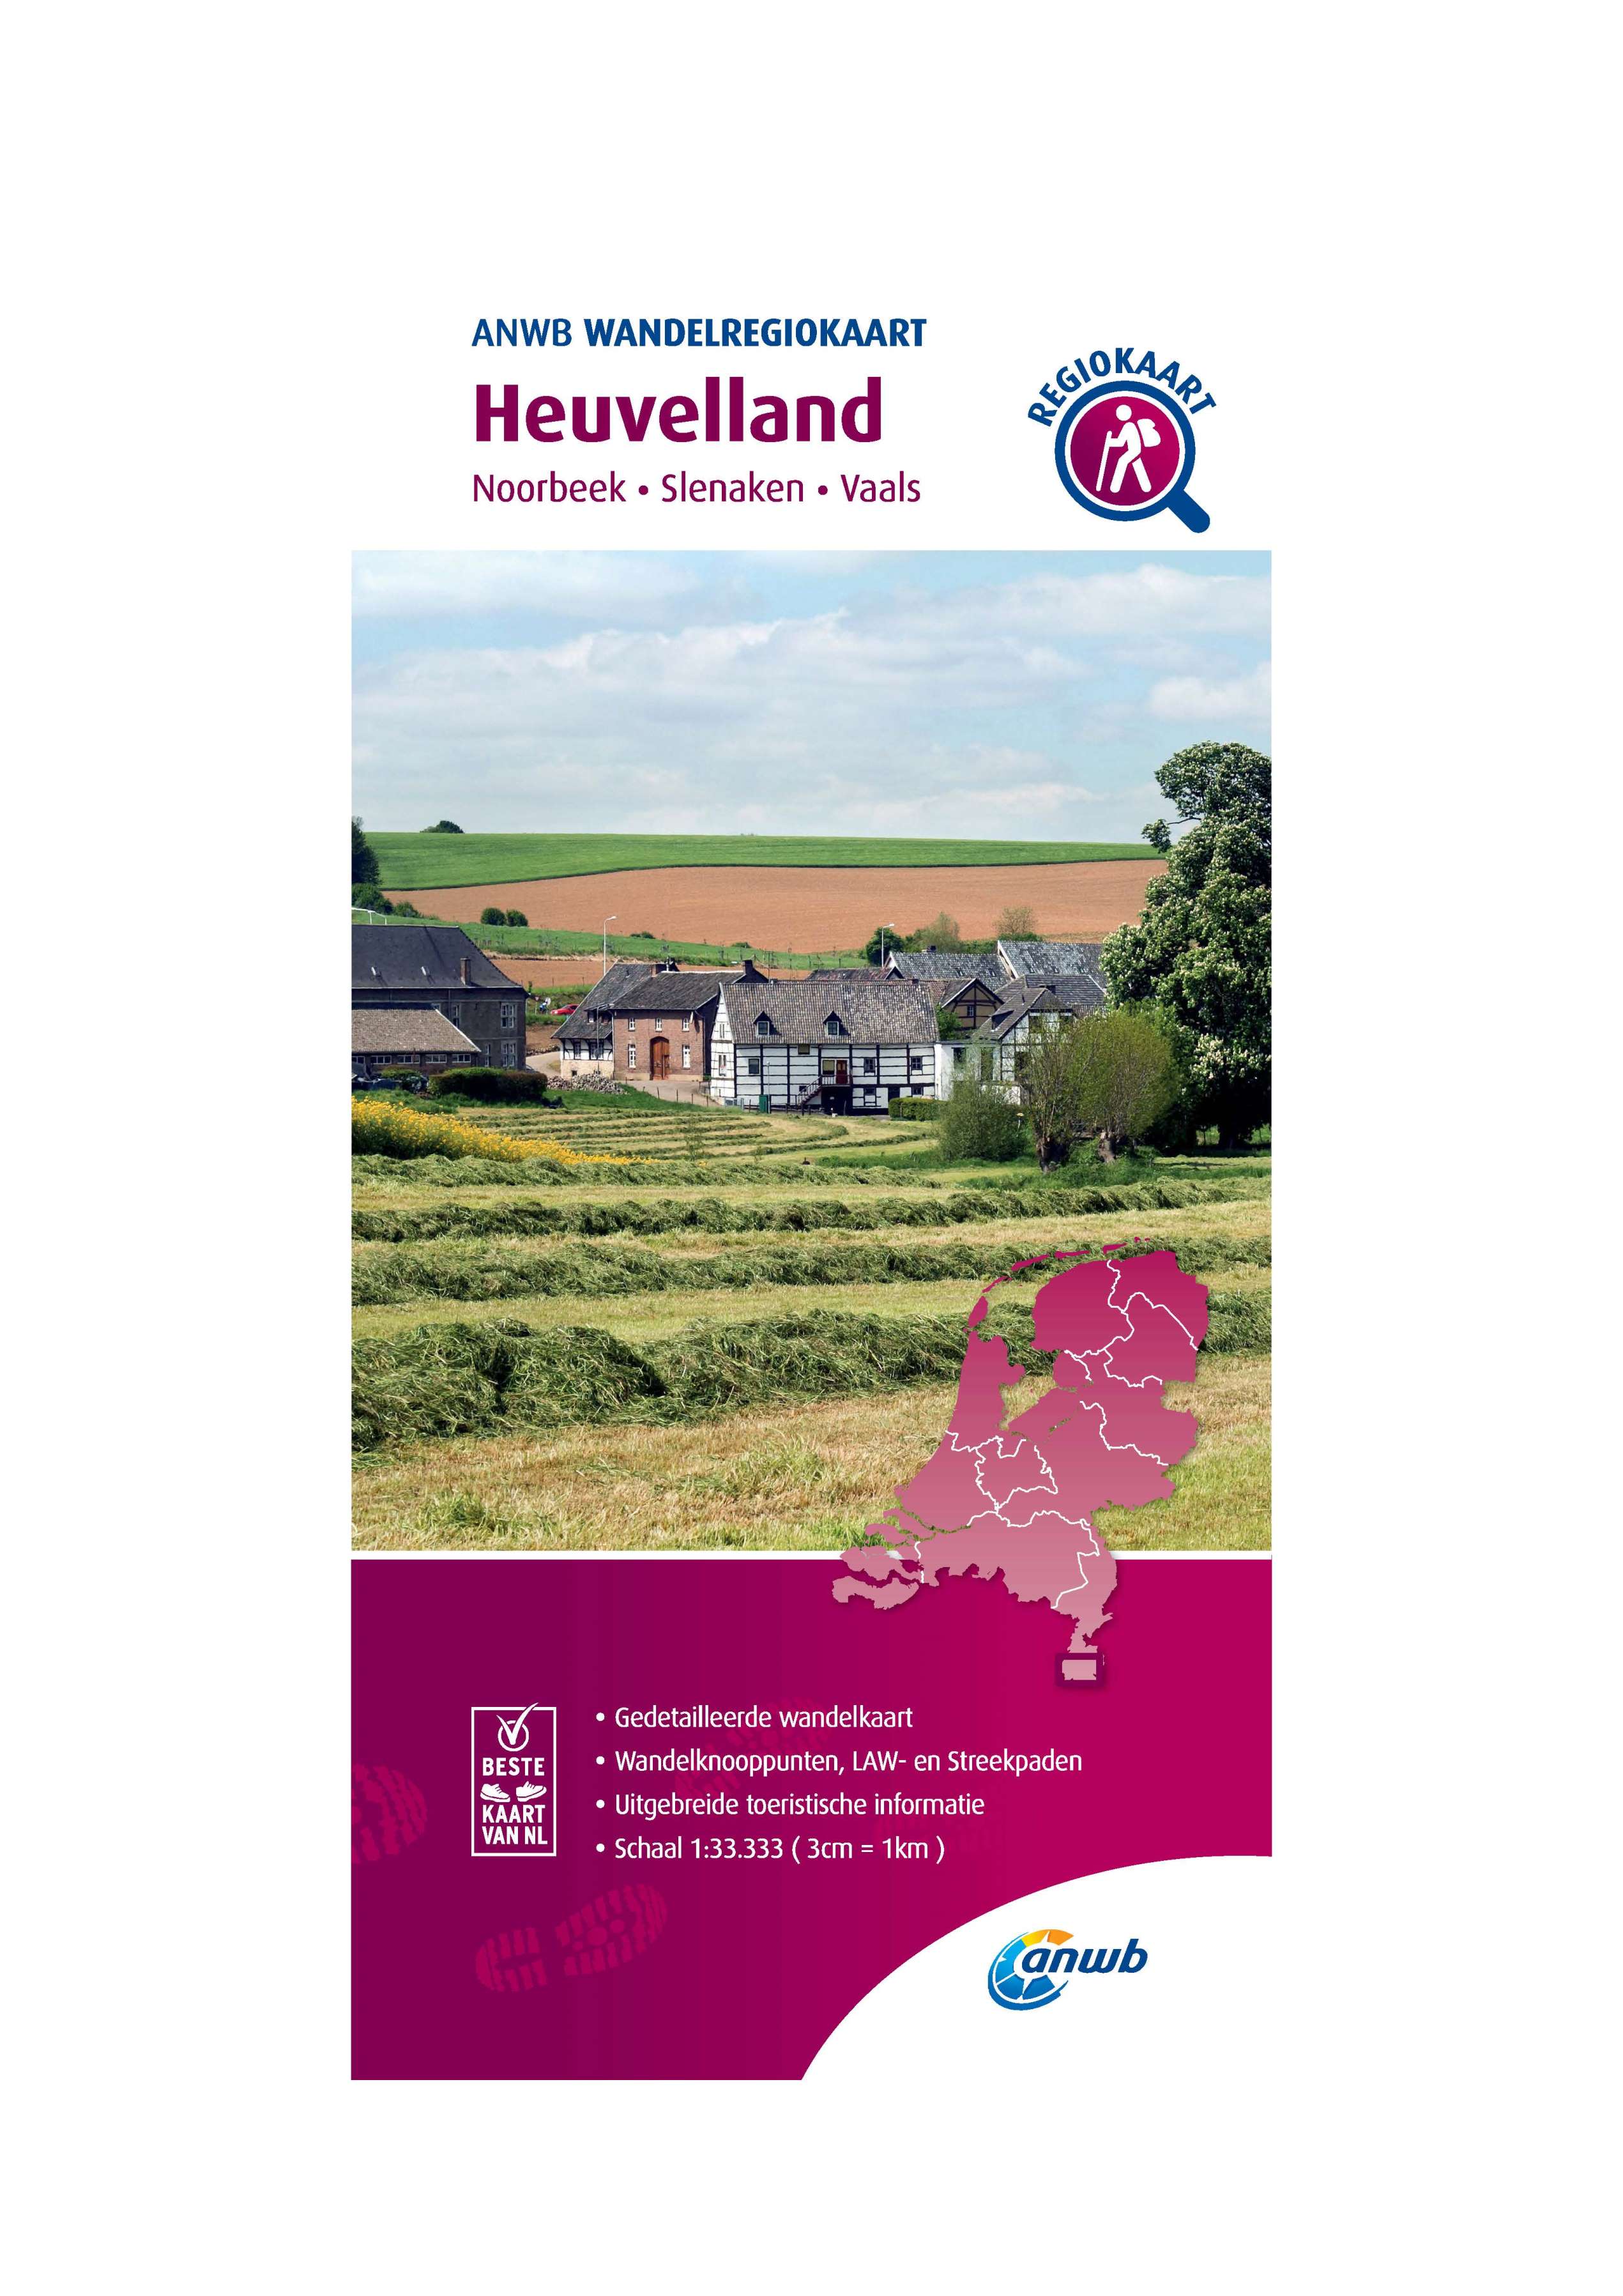 Heuvelland Wandelregiokaart - 1/33